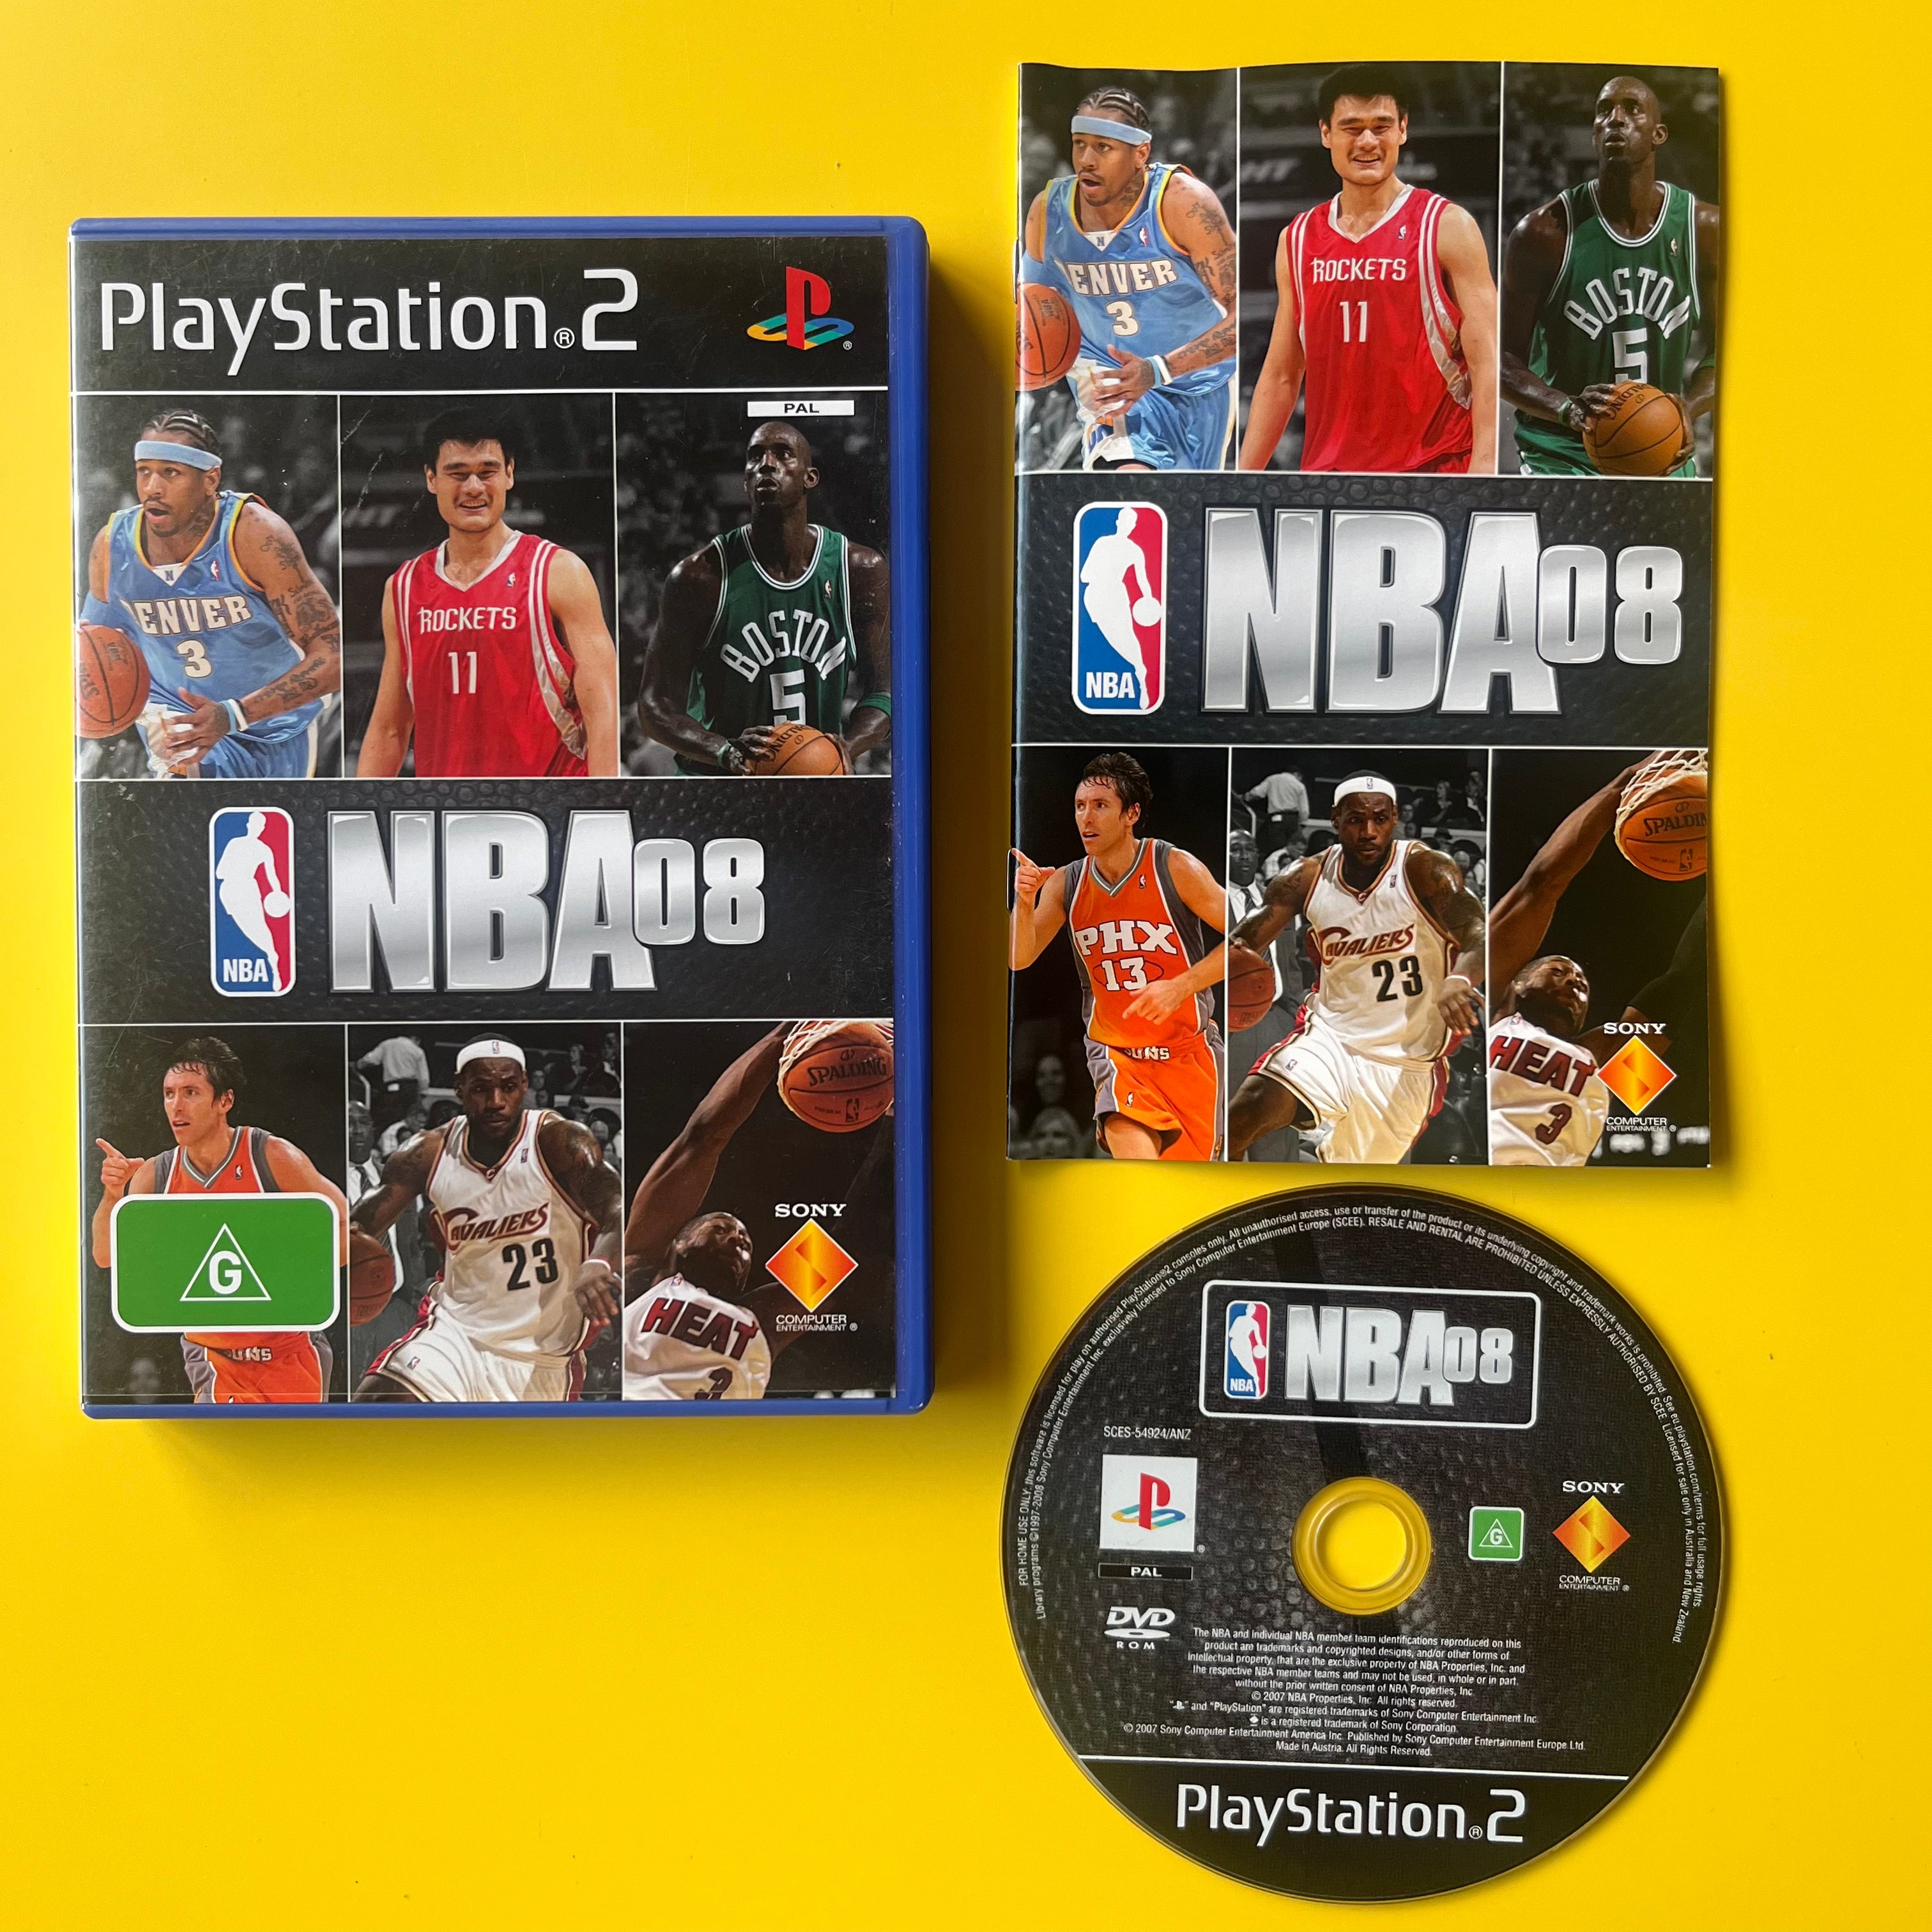 PS2 - NBA 08